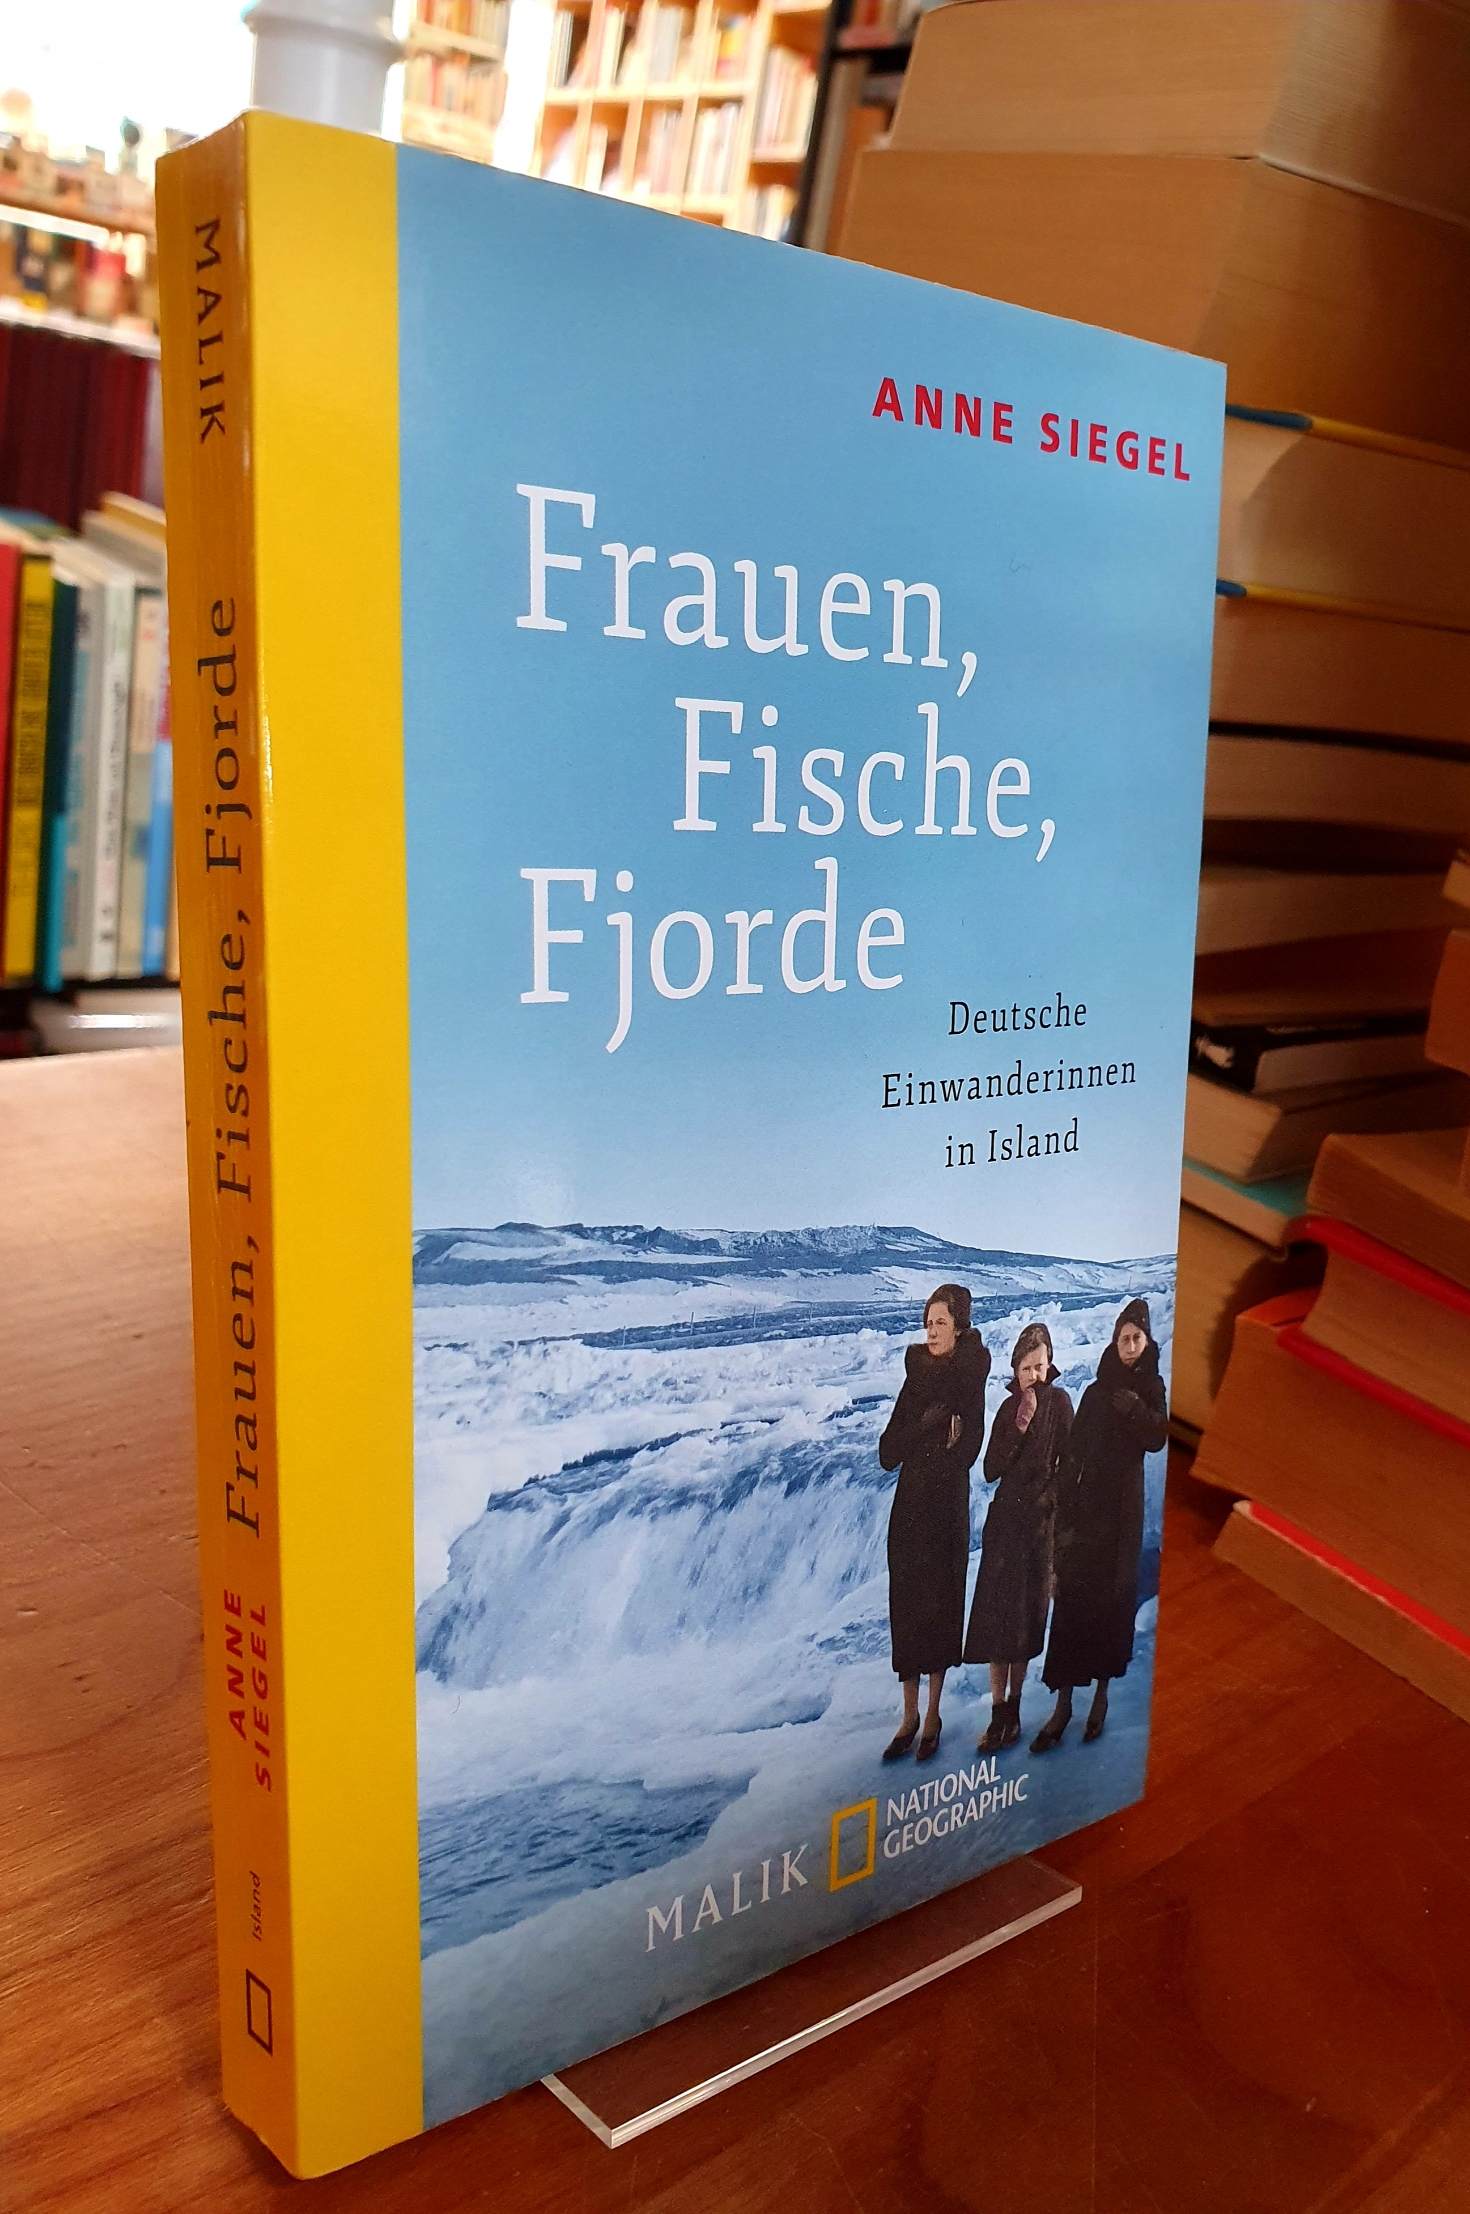 Siegel, Frauen, Fische, Fjorde – Deutsche Einwanderinnen in Island,